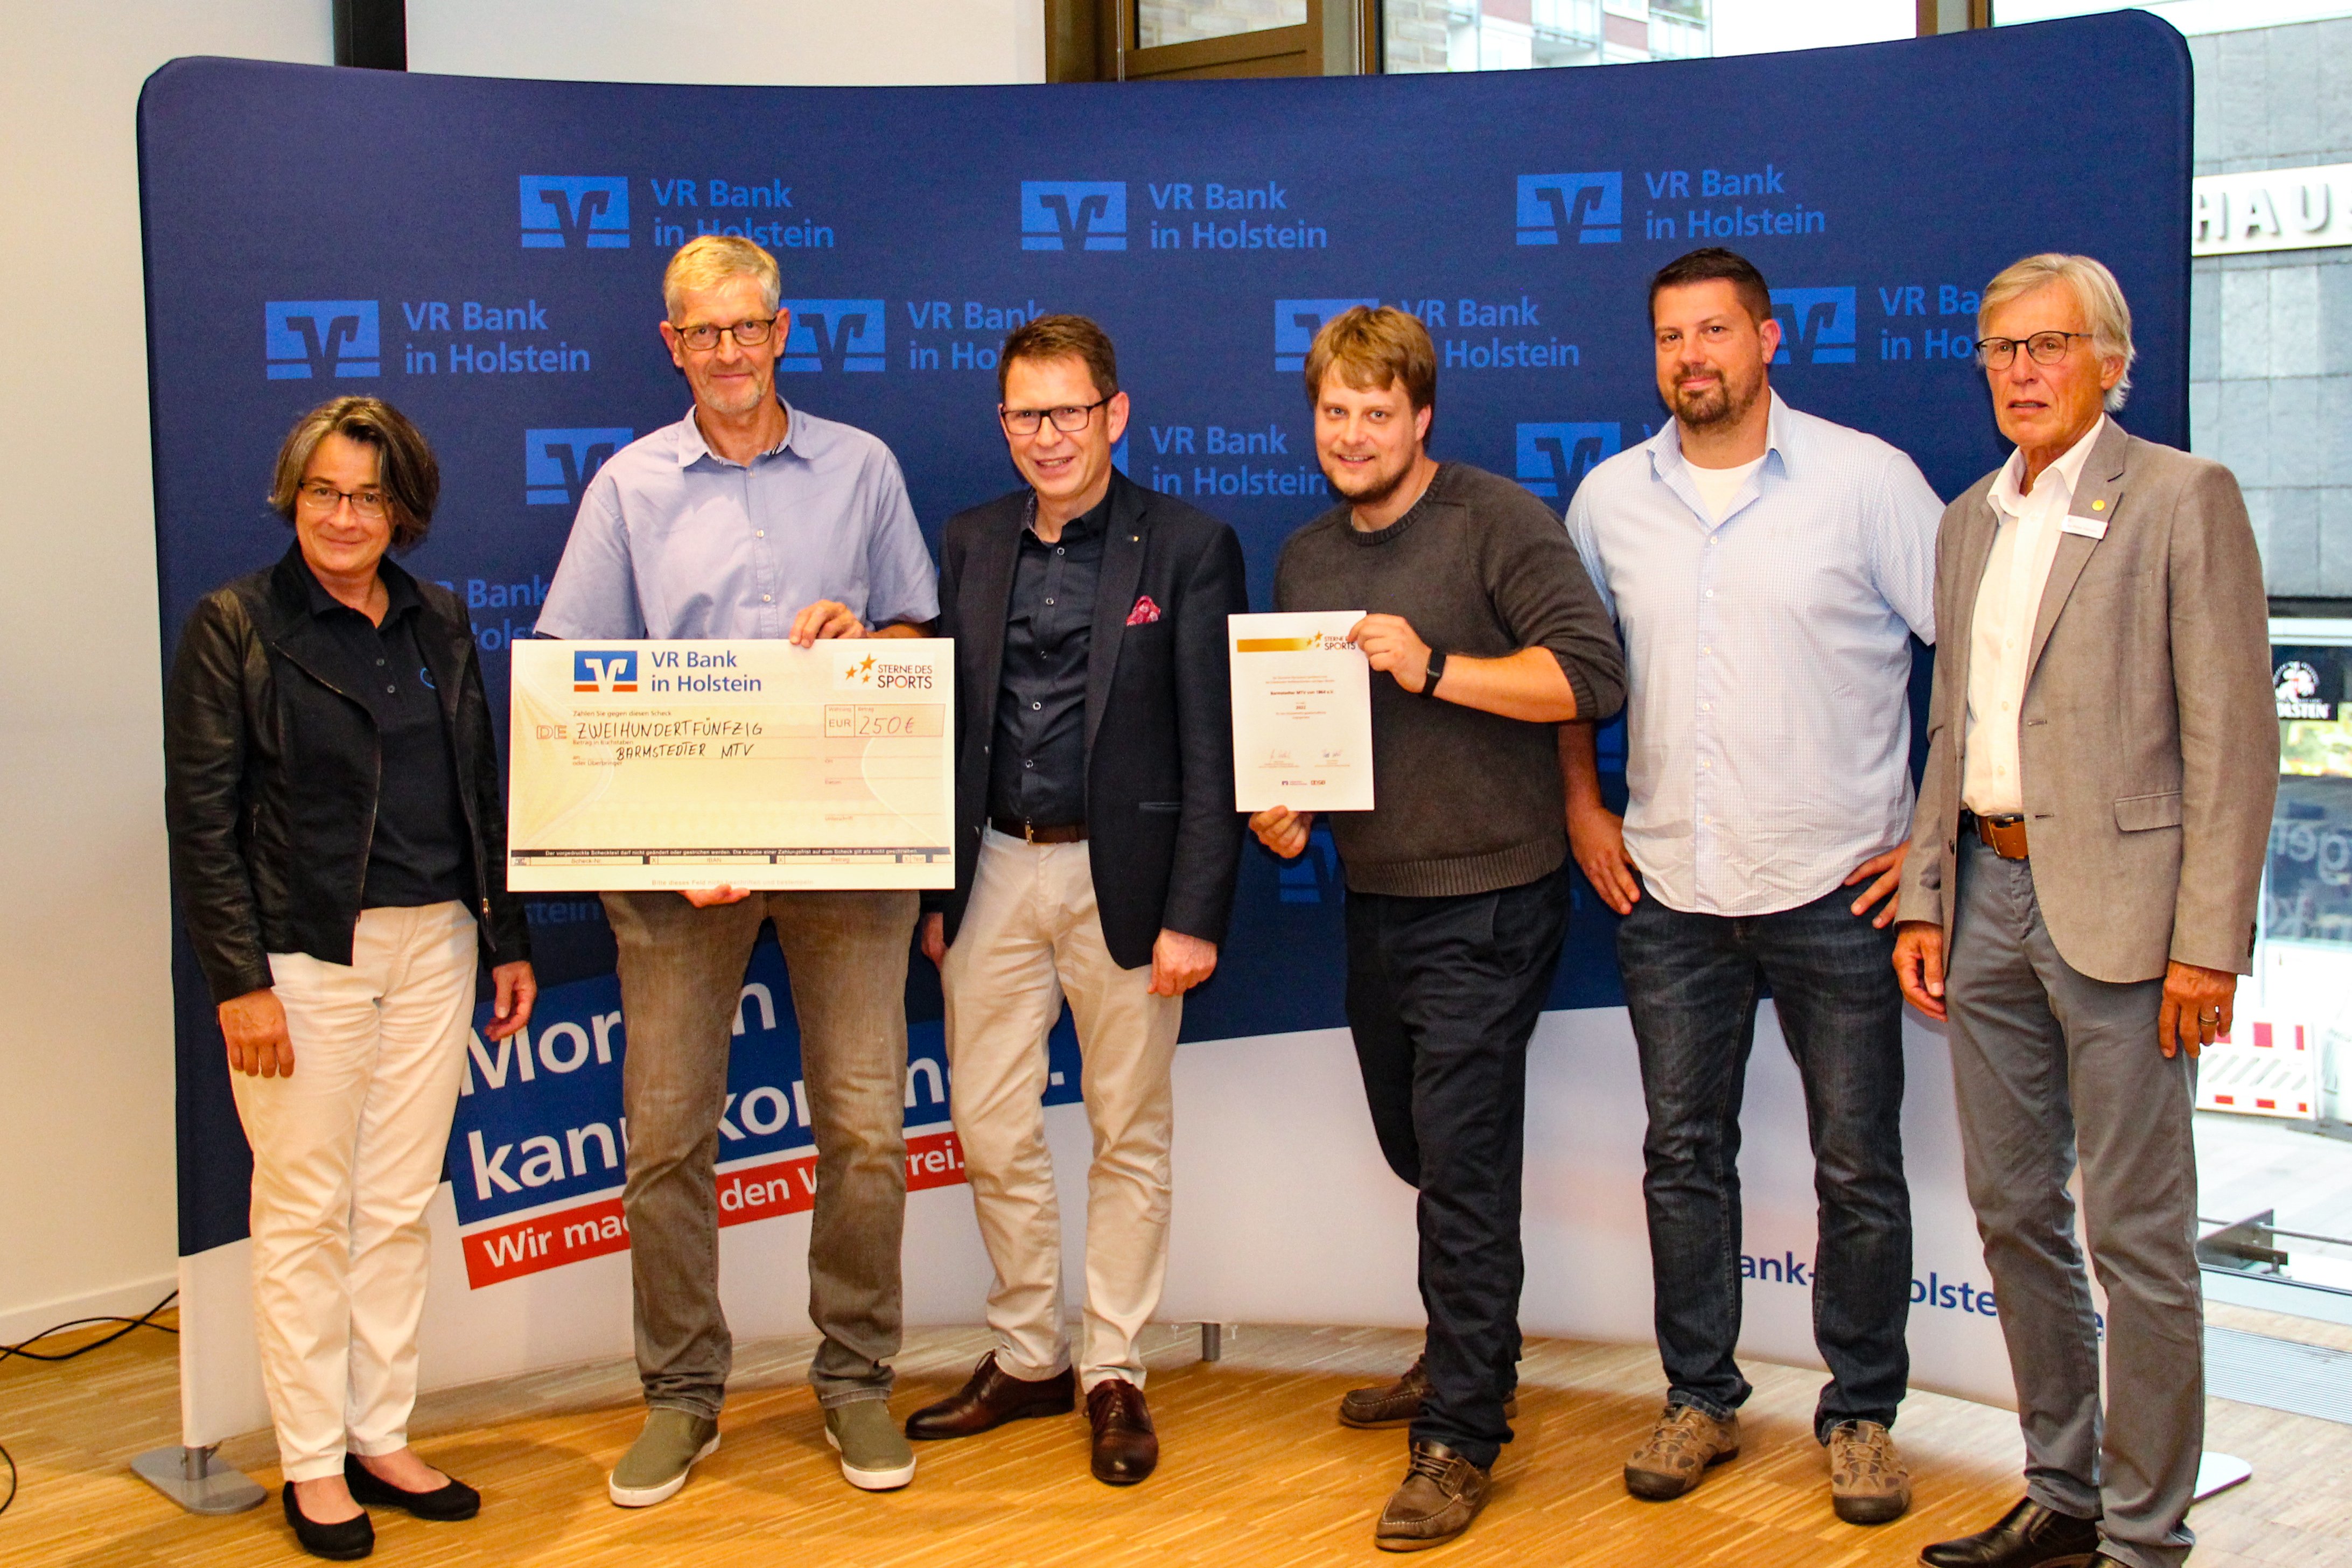 € 250,- für den Barmstedter MTV - Bürgerstiftung VR Bank, VR Bank und KSV Pinneberg gratulieren! - Foto: VR Bank in Holstein